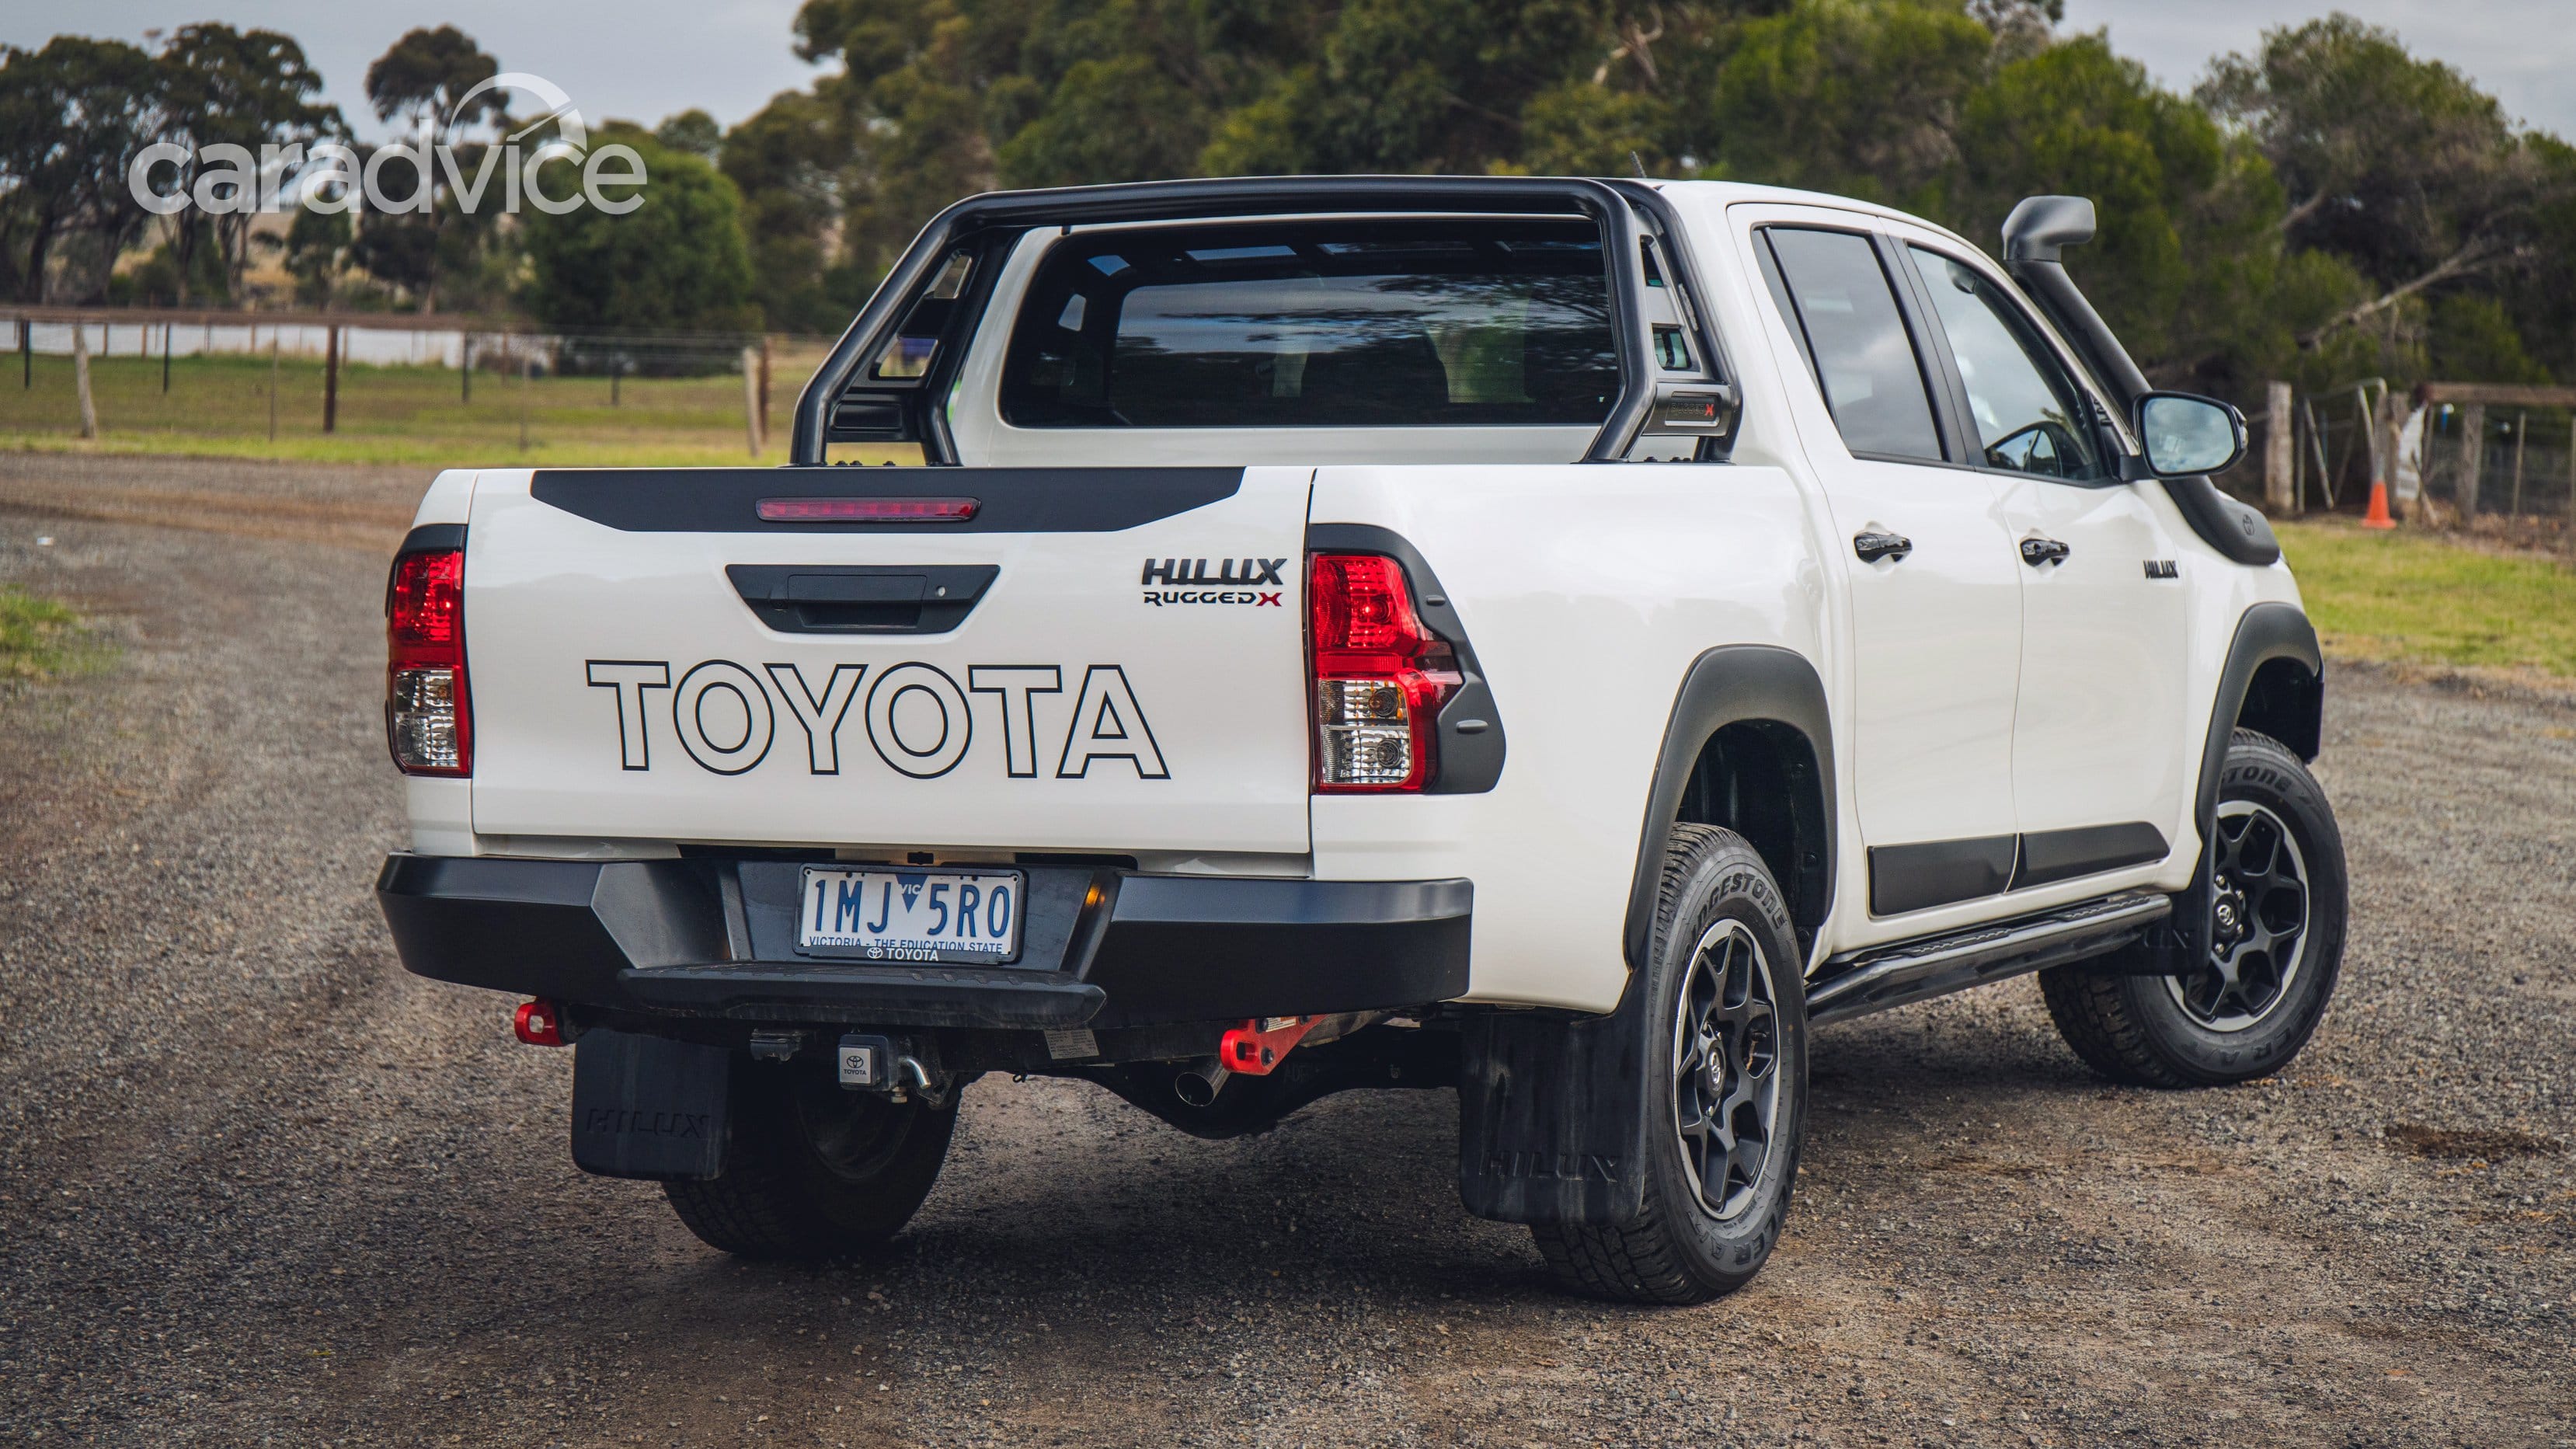 售价28万,2018款丰田hilux rugged皮卡在澳大利亚上市